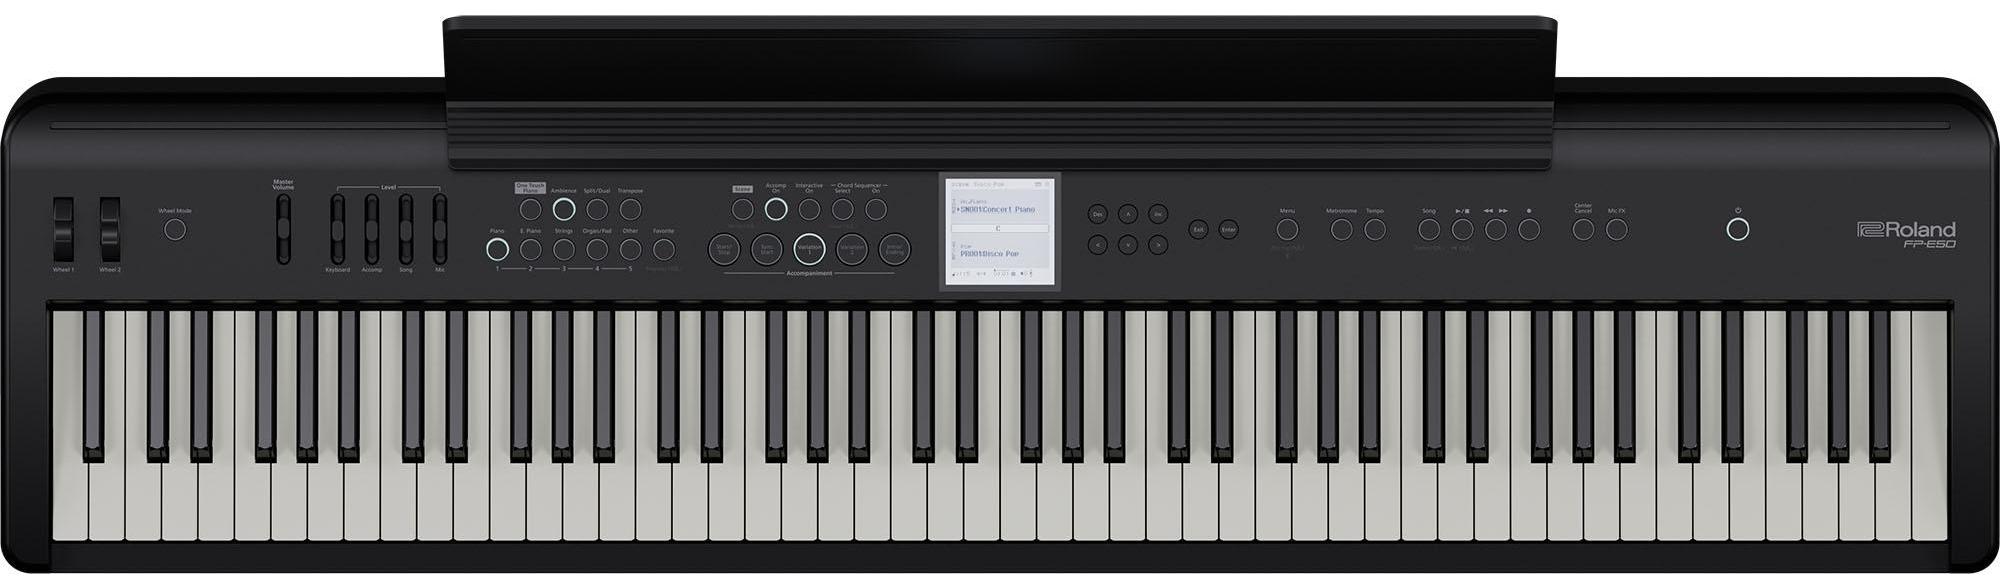 Portable digital piano Roland FP-E50